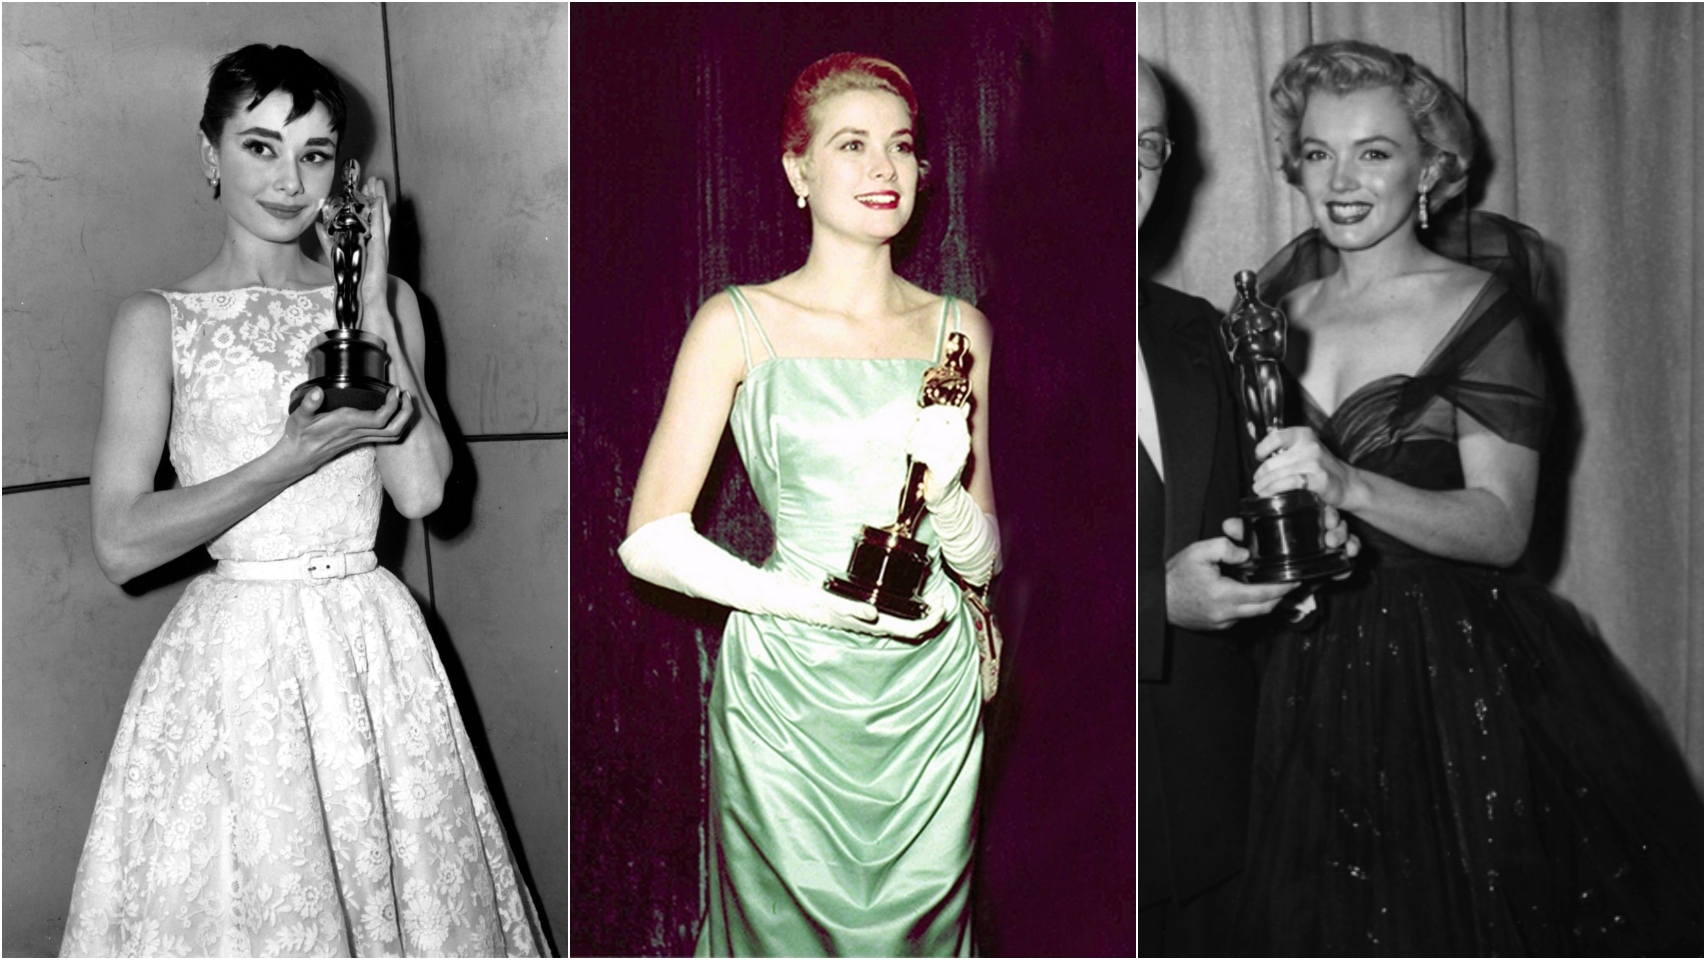 De izquierda a derecha: Audrey Hepburn, Grace Kelly y Marilyn Monroe en los Oscar.